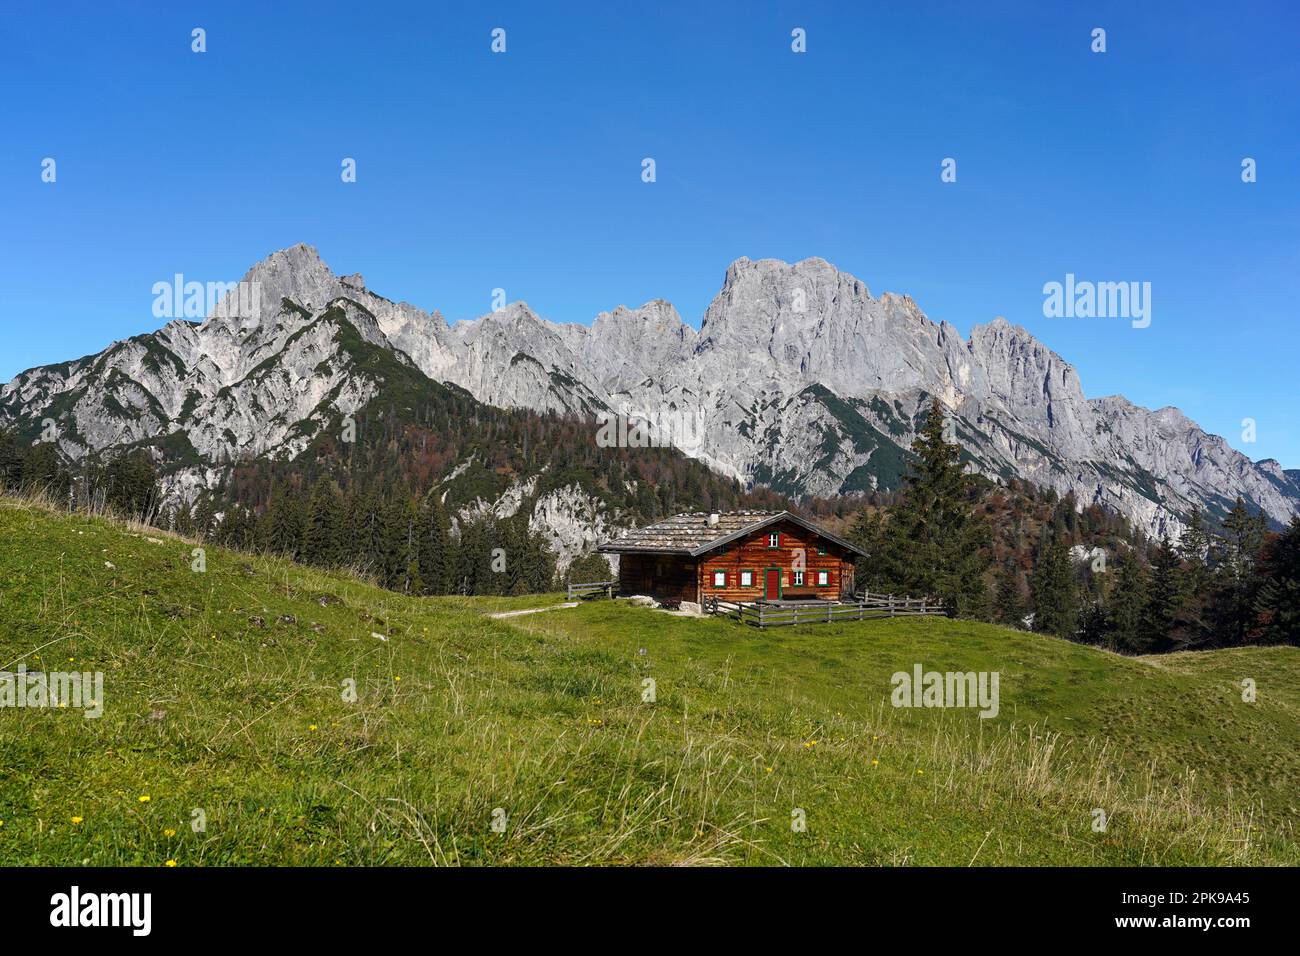 Austria, province of Salzburg, Pinzgau, Weißbach nature park, Hirschbichl, Litzlalm, Gramlerkaser alpine hut, view of the Reiteralpe in the Berchtesgaden region Stock Photo